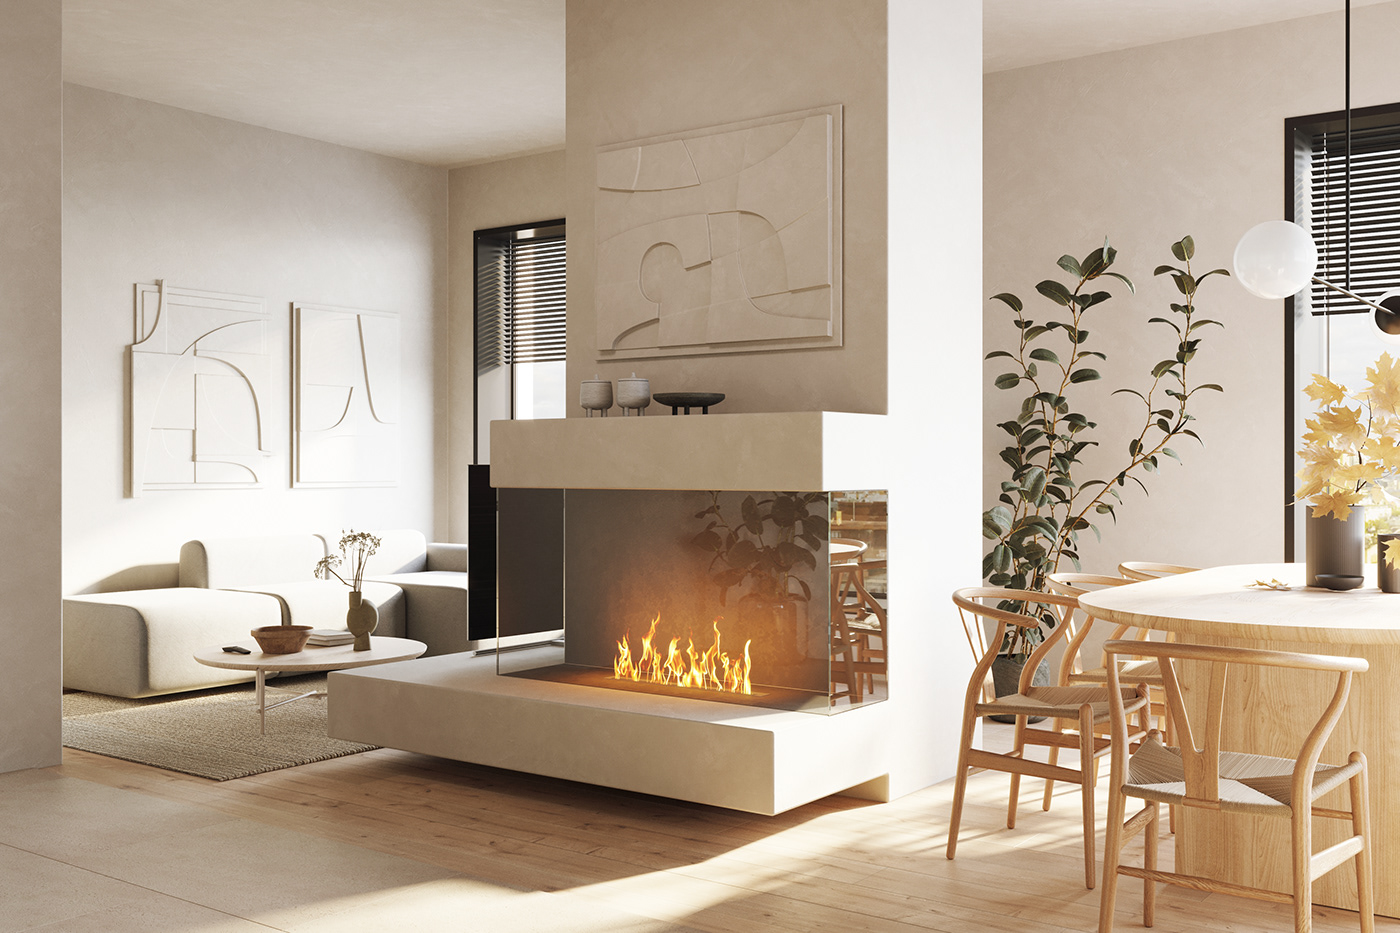 3ds max corona render  designmoscow ganzha GANZHADESIGN ganzhailya interior design  luxury interior minimalist minimalist interior